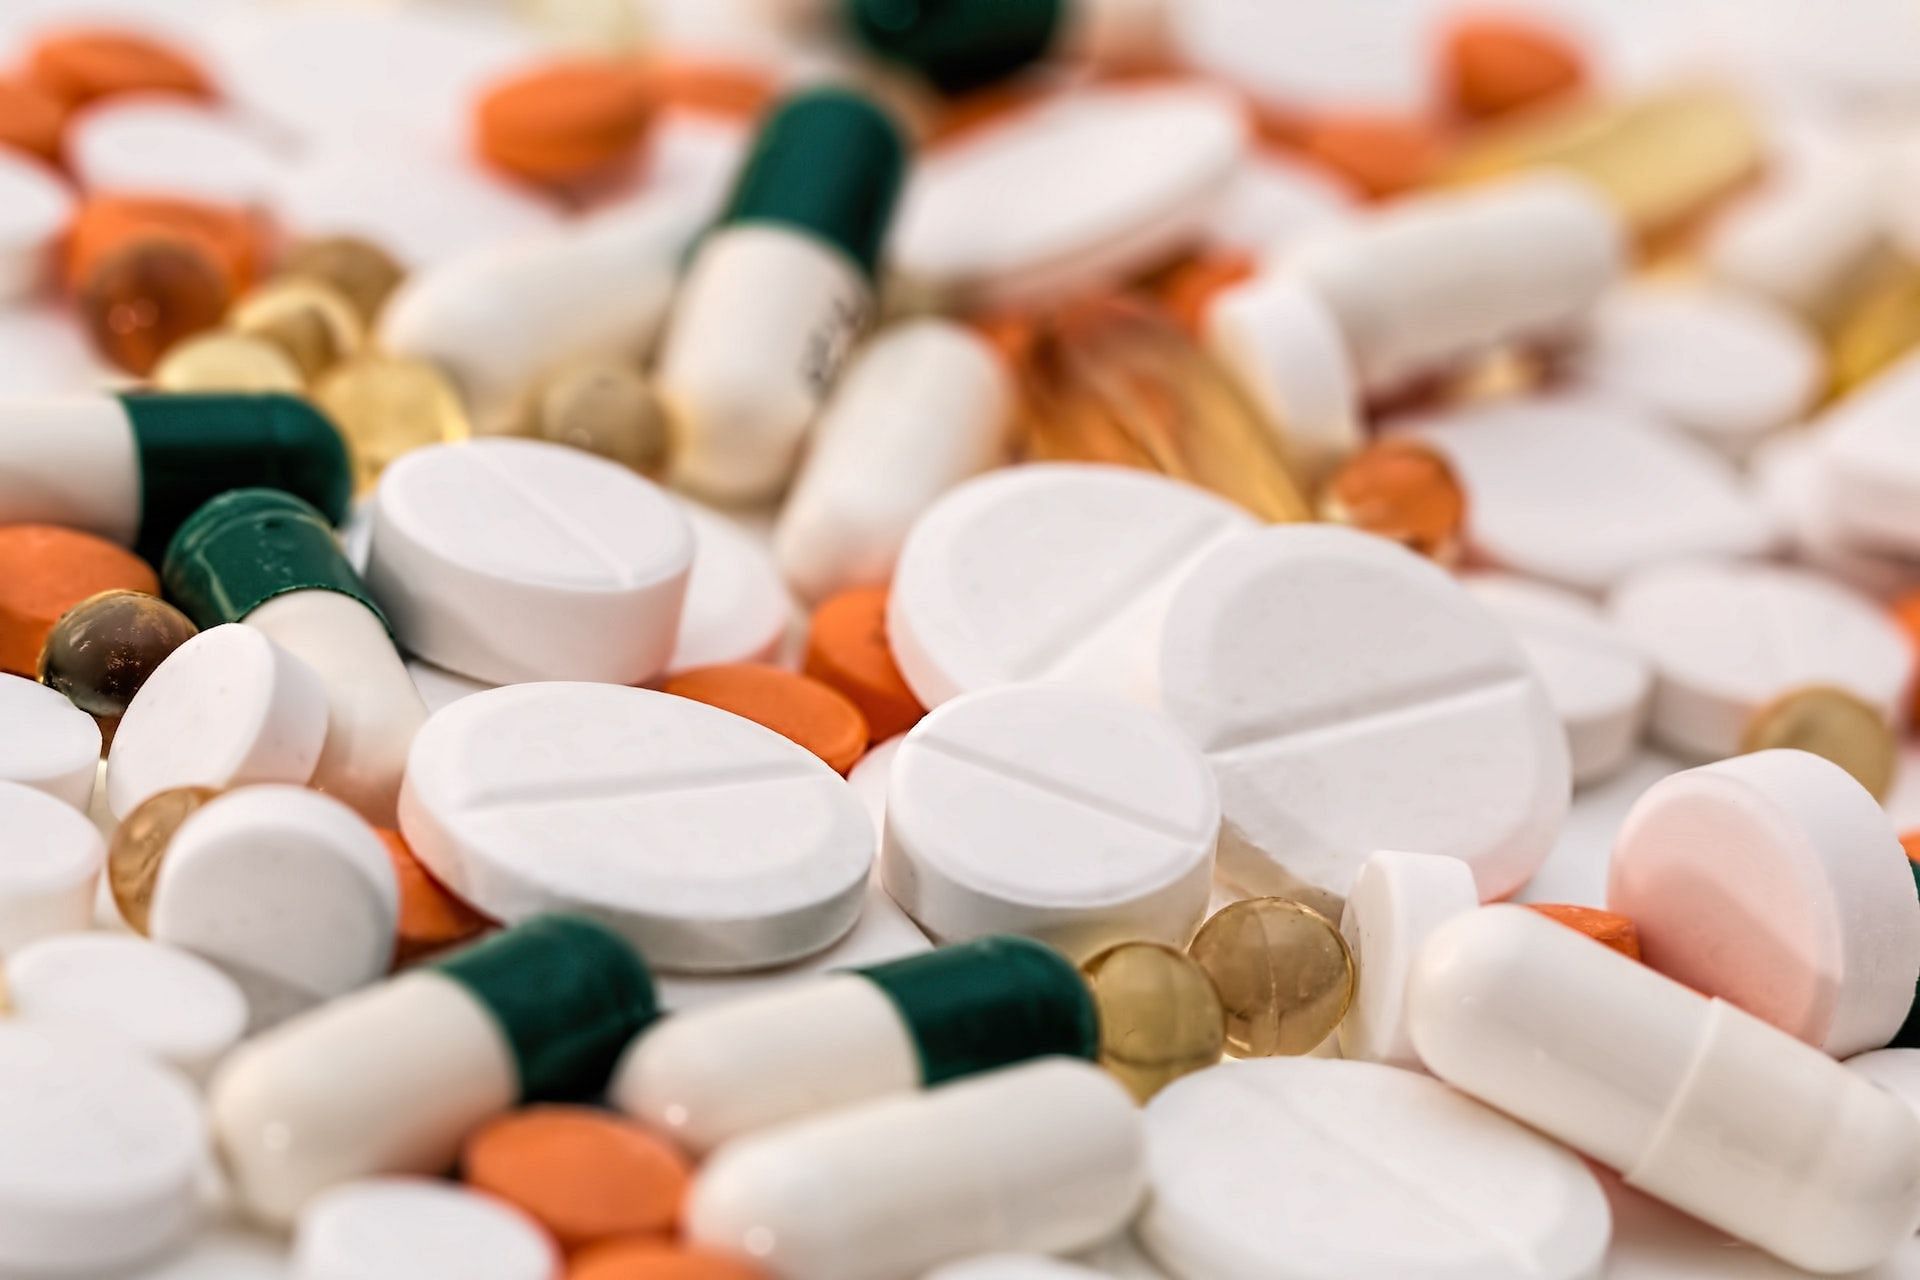 يمكن أن تساعد الأدوية في تخفيف الألم والتورم.  (الصورة من Pexels / Pixabay)